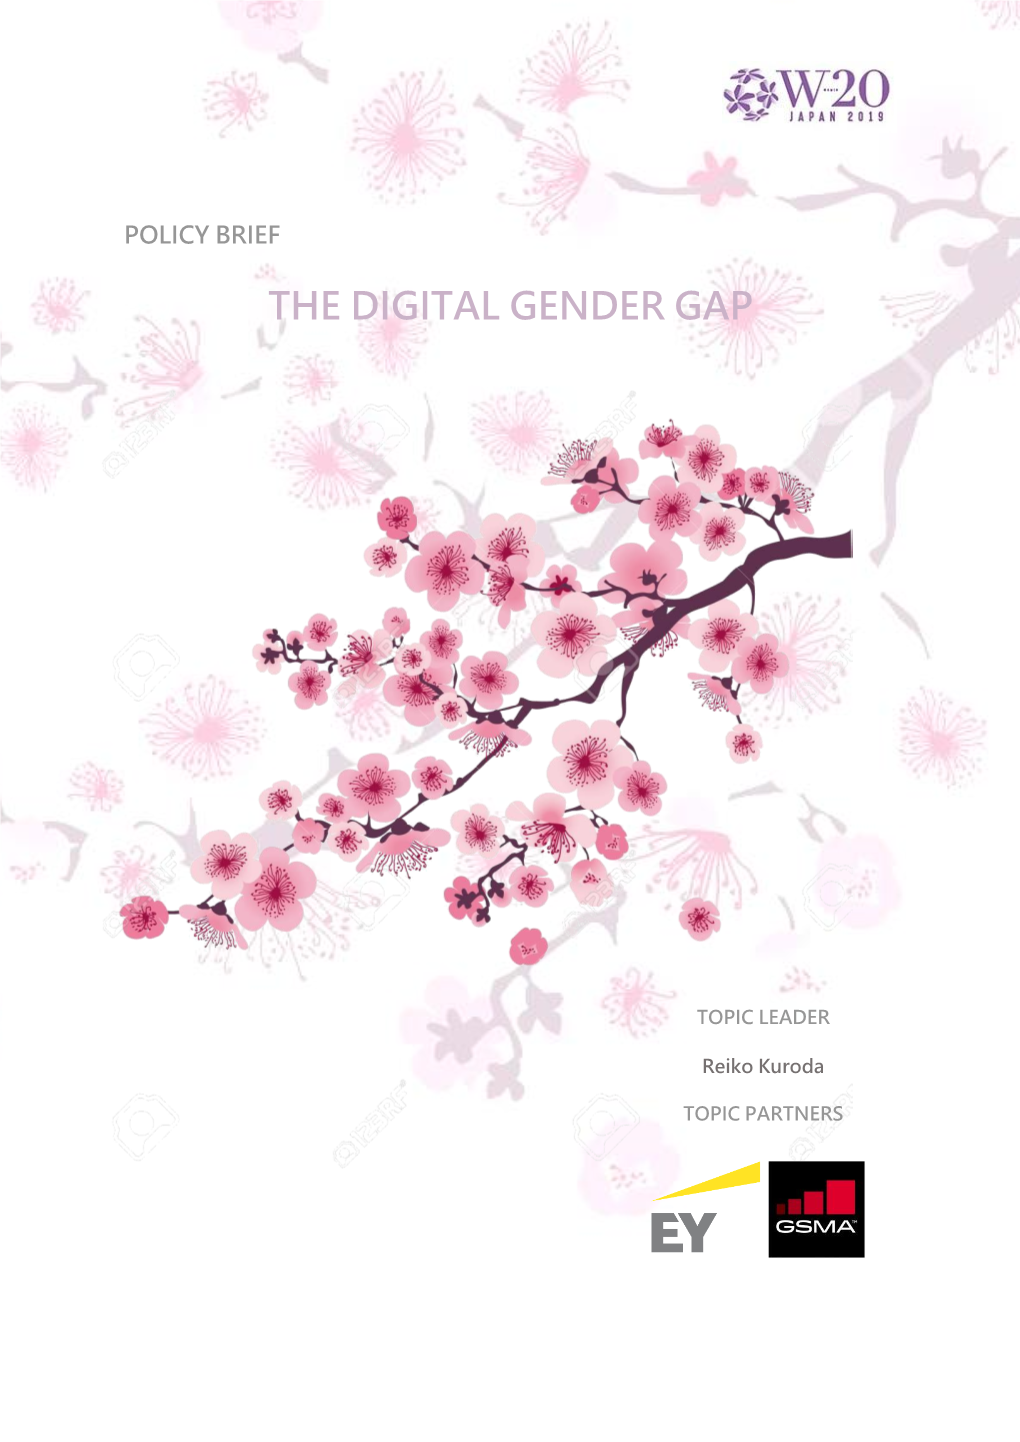 The Digital Gender Gap